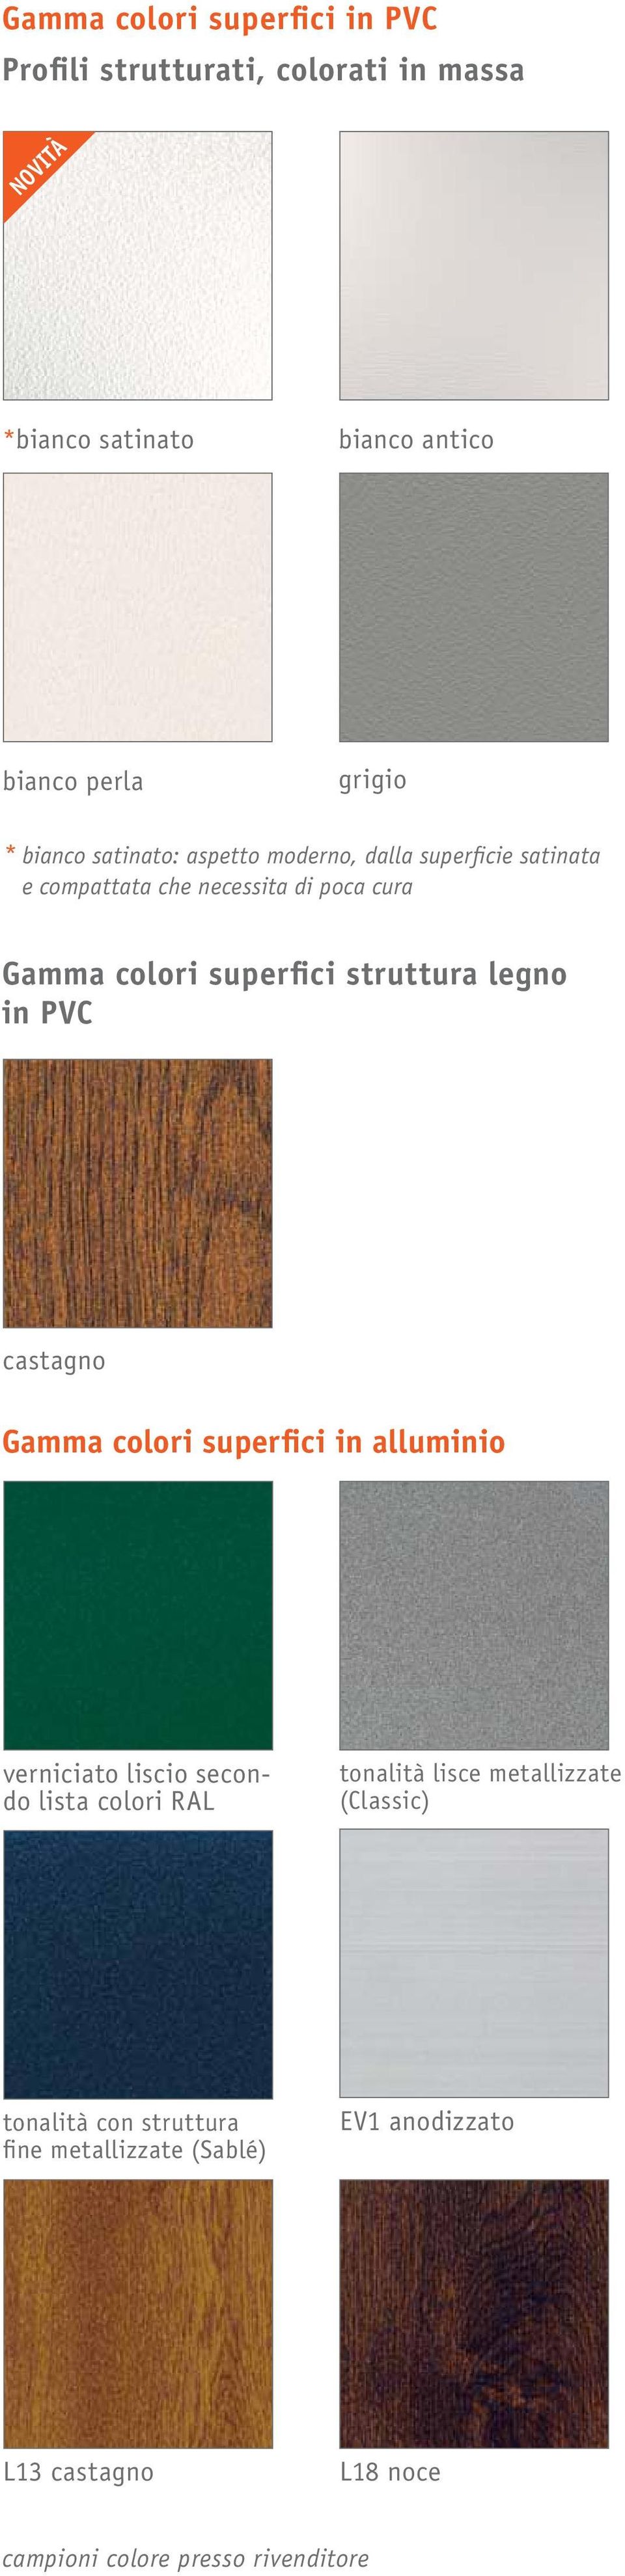 struttura legno in PVC castagno Gamma colori superfici in alluminio verniciato liscio secondo lista colori RAL tonalità lisce